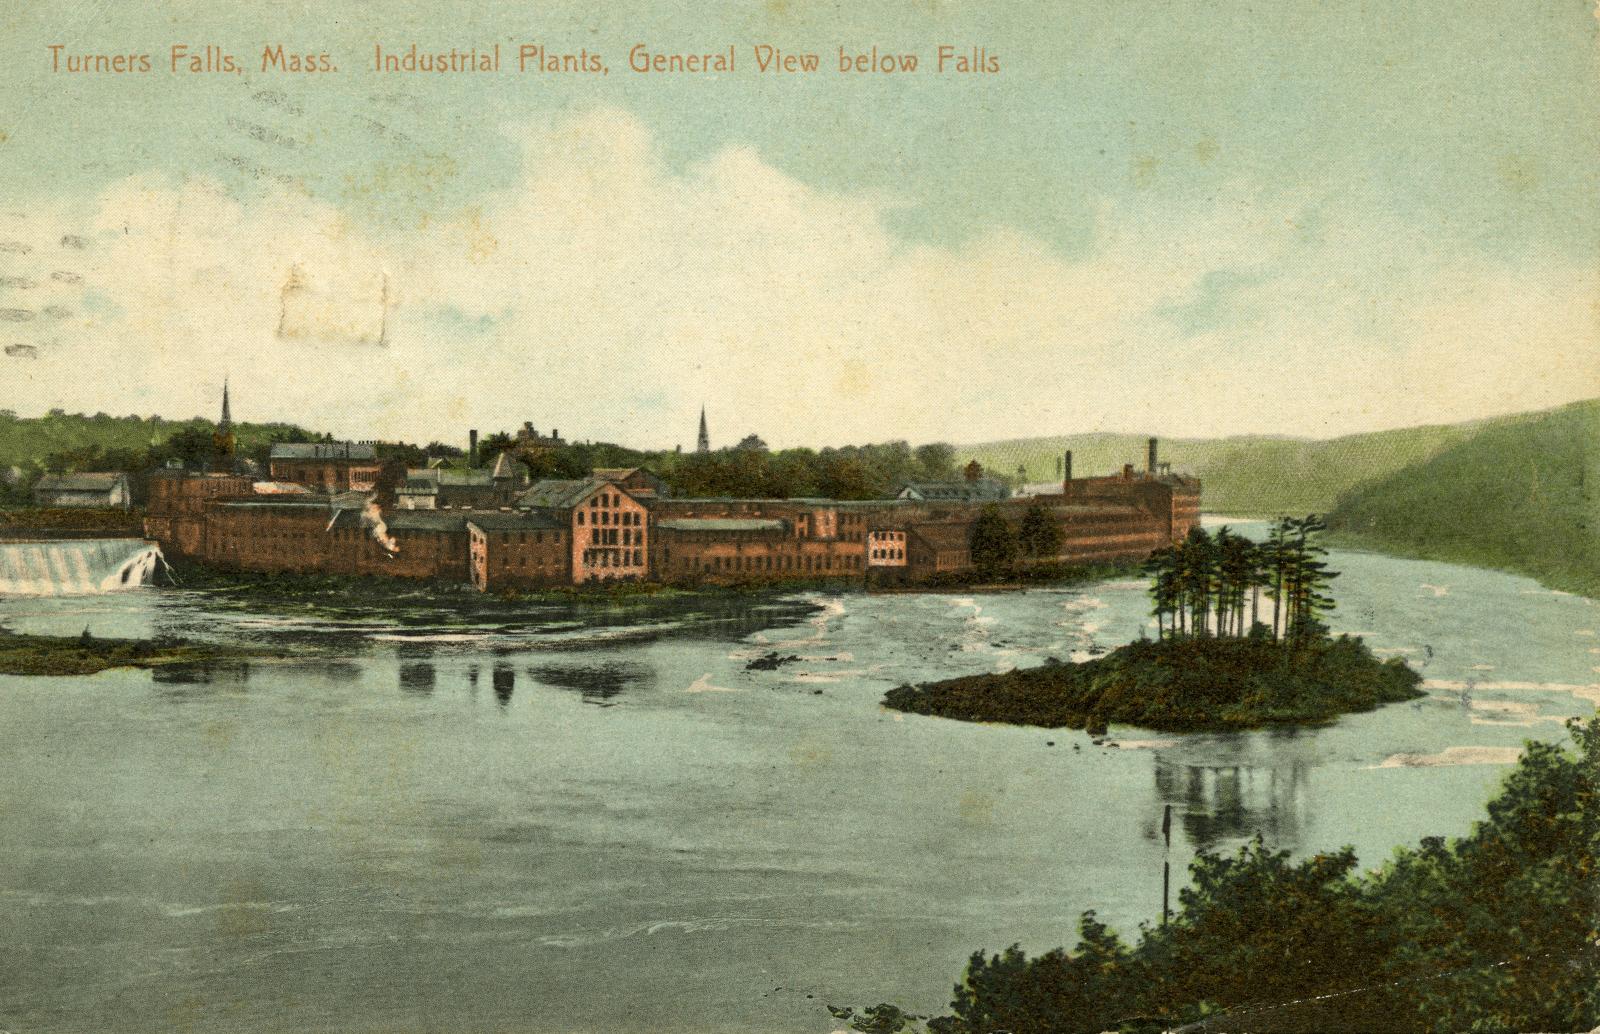 Turners Falls, Mass. Industrial Plants, General View below Falls